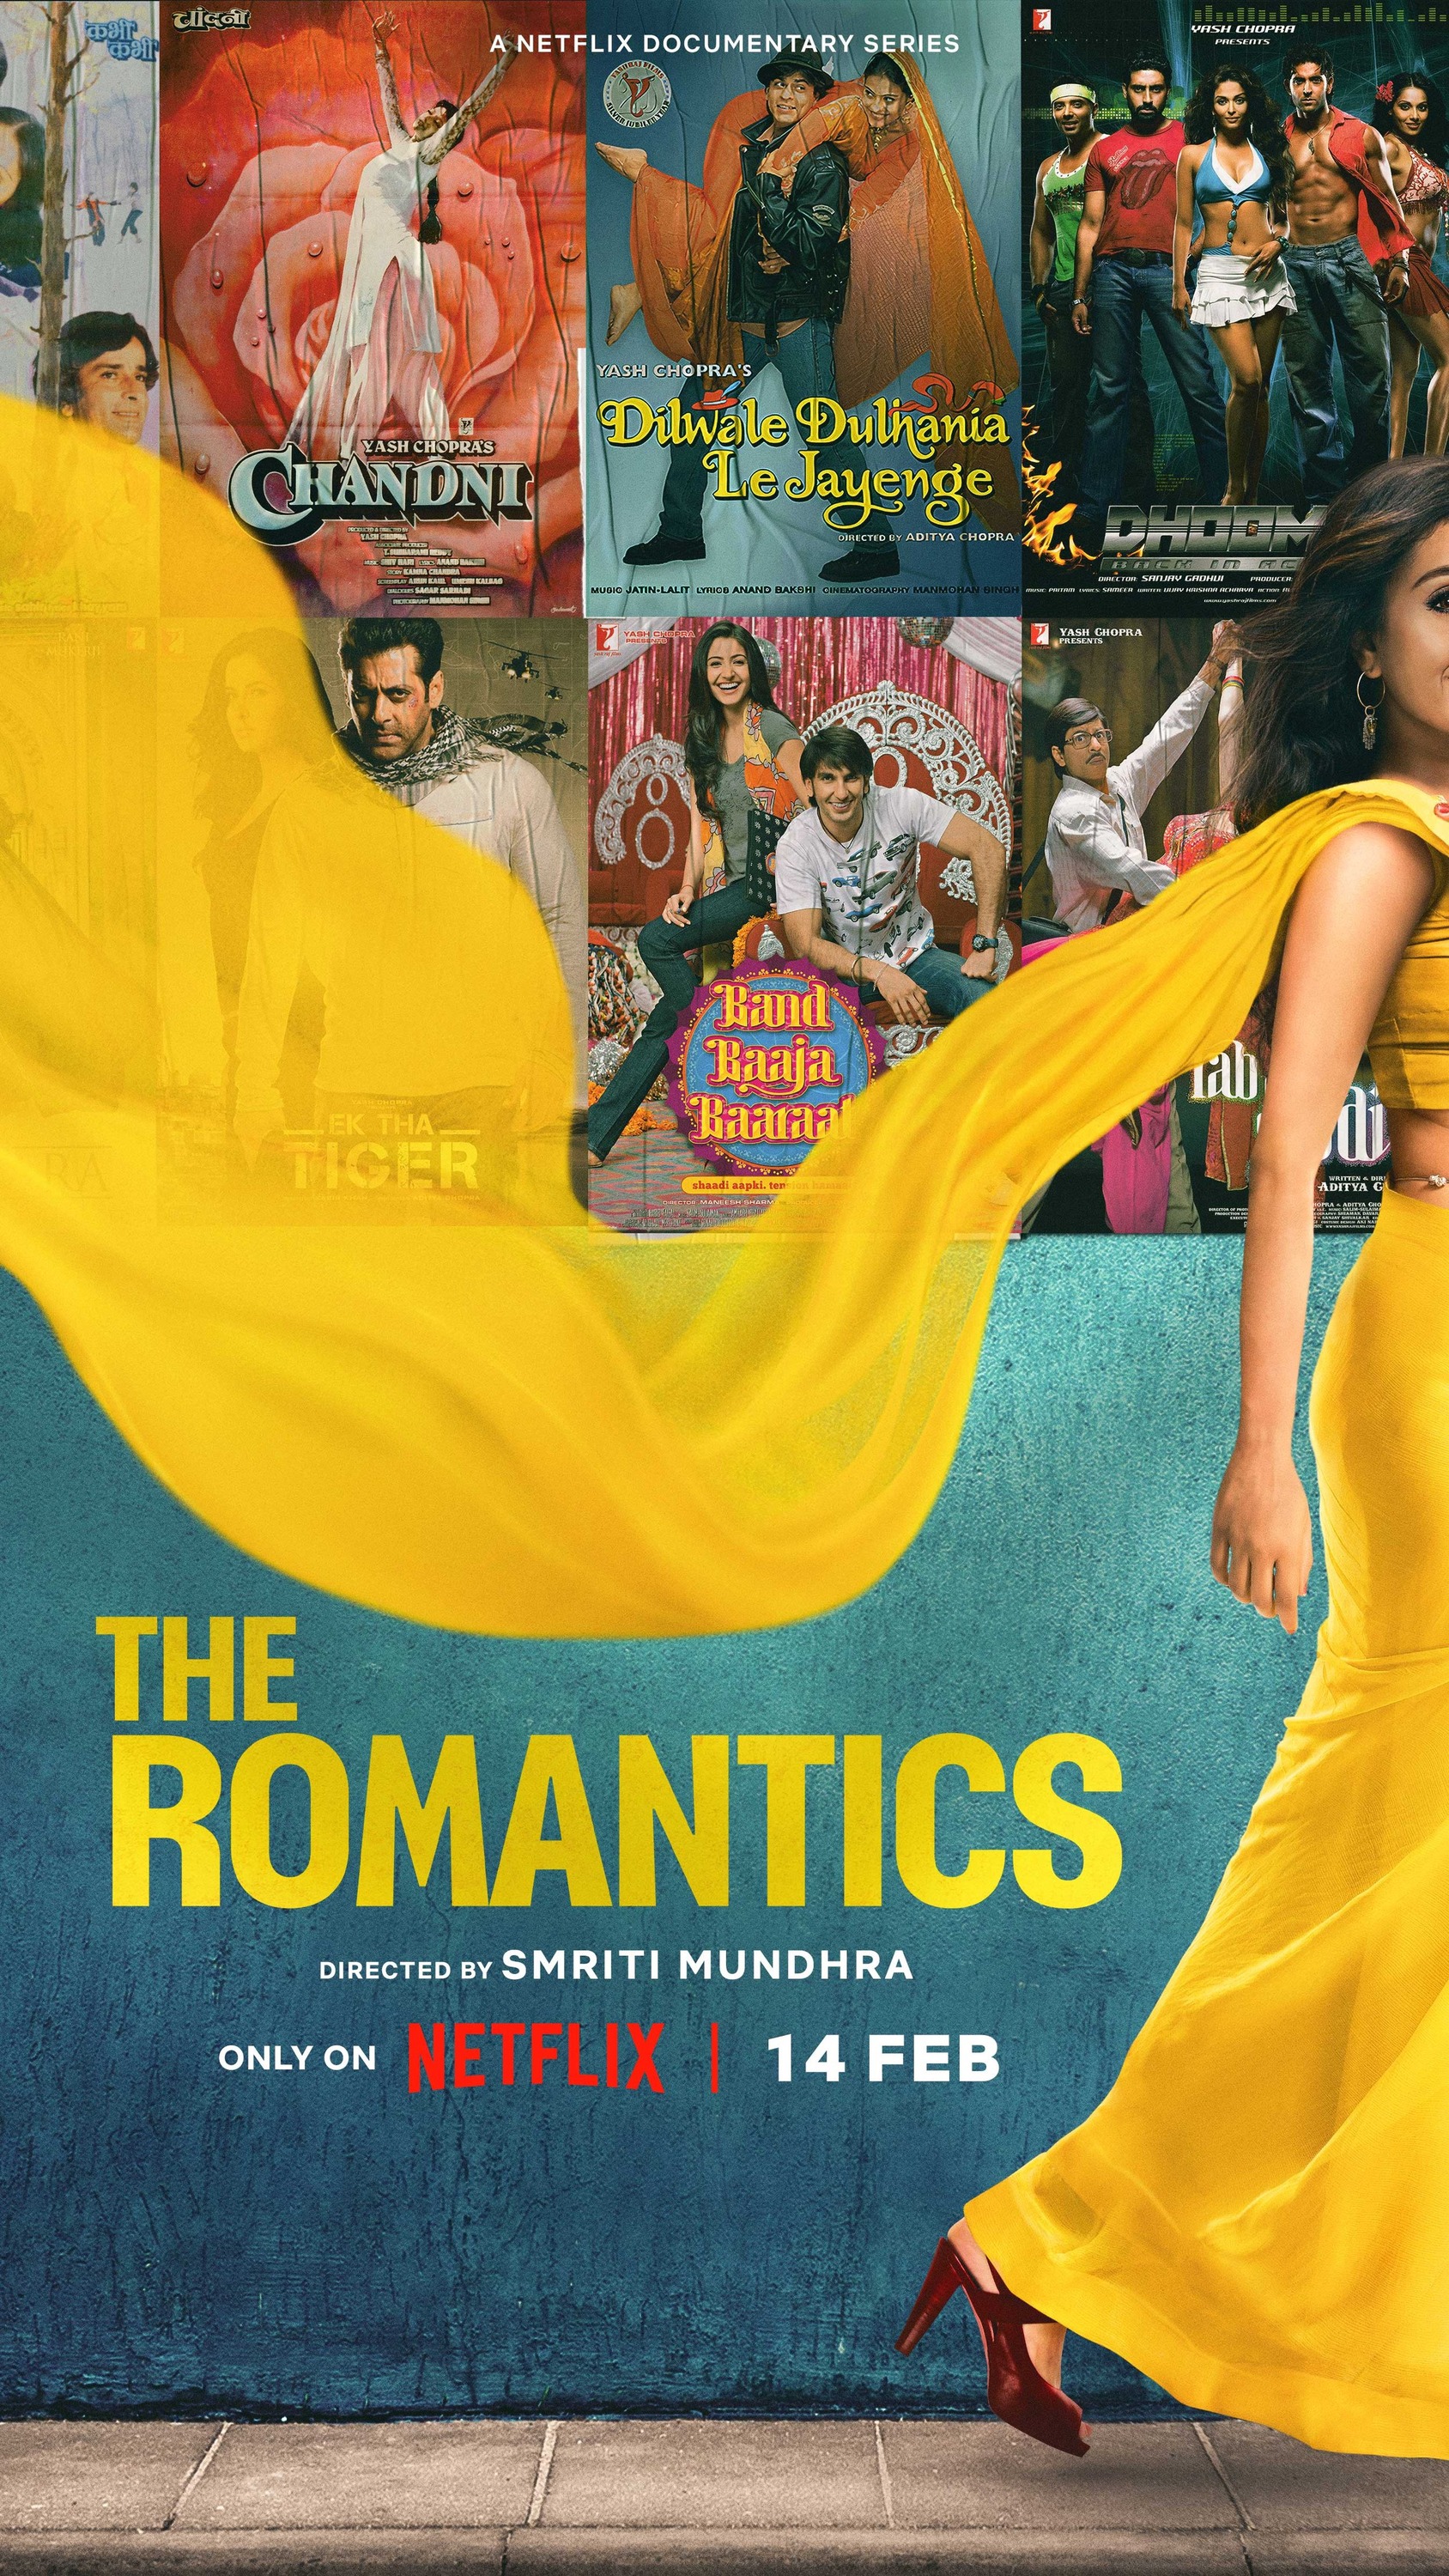 Mega Sized TV Poster Image for The Romantics 